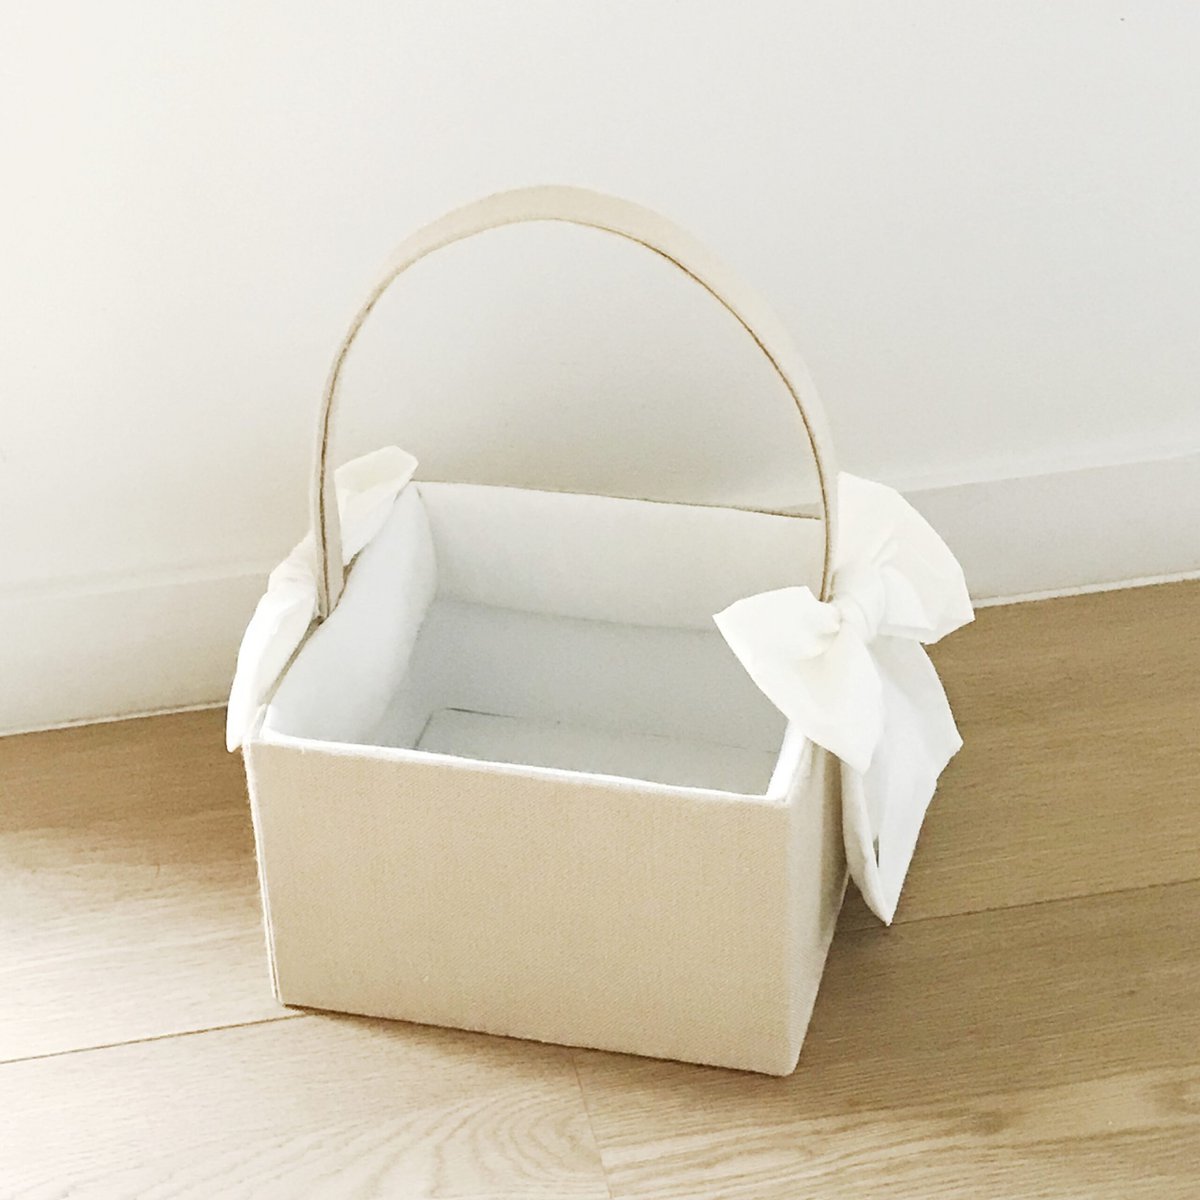 Linen diaper basket with bows 23x23cm